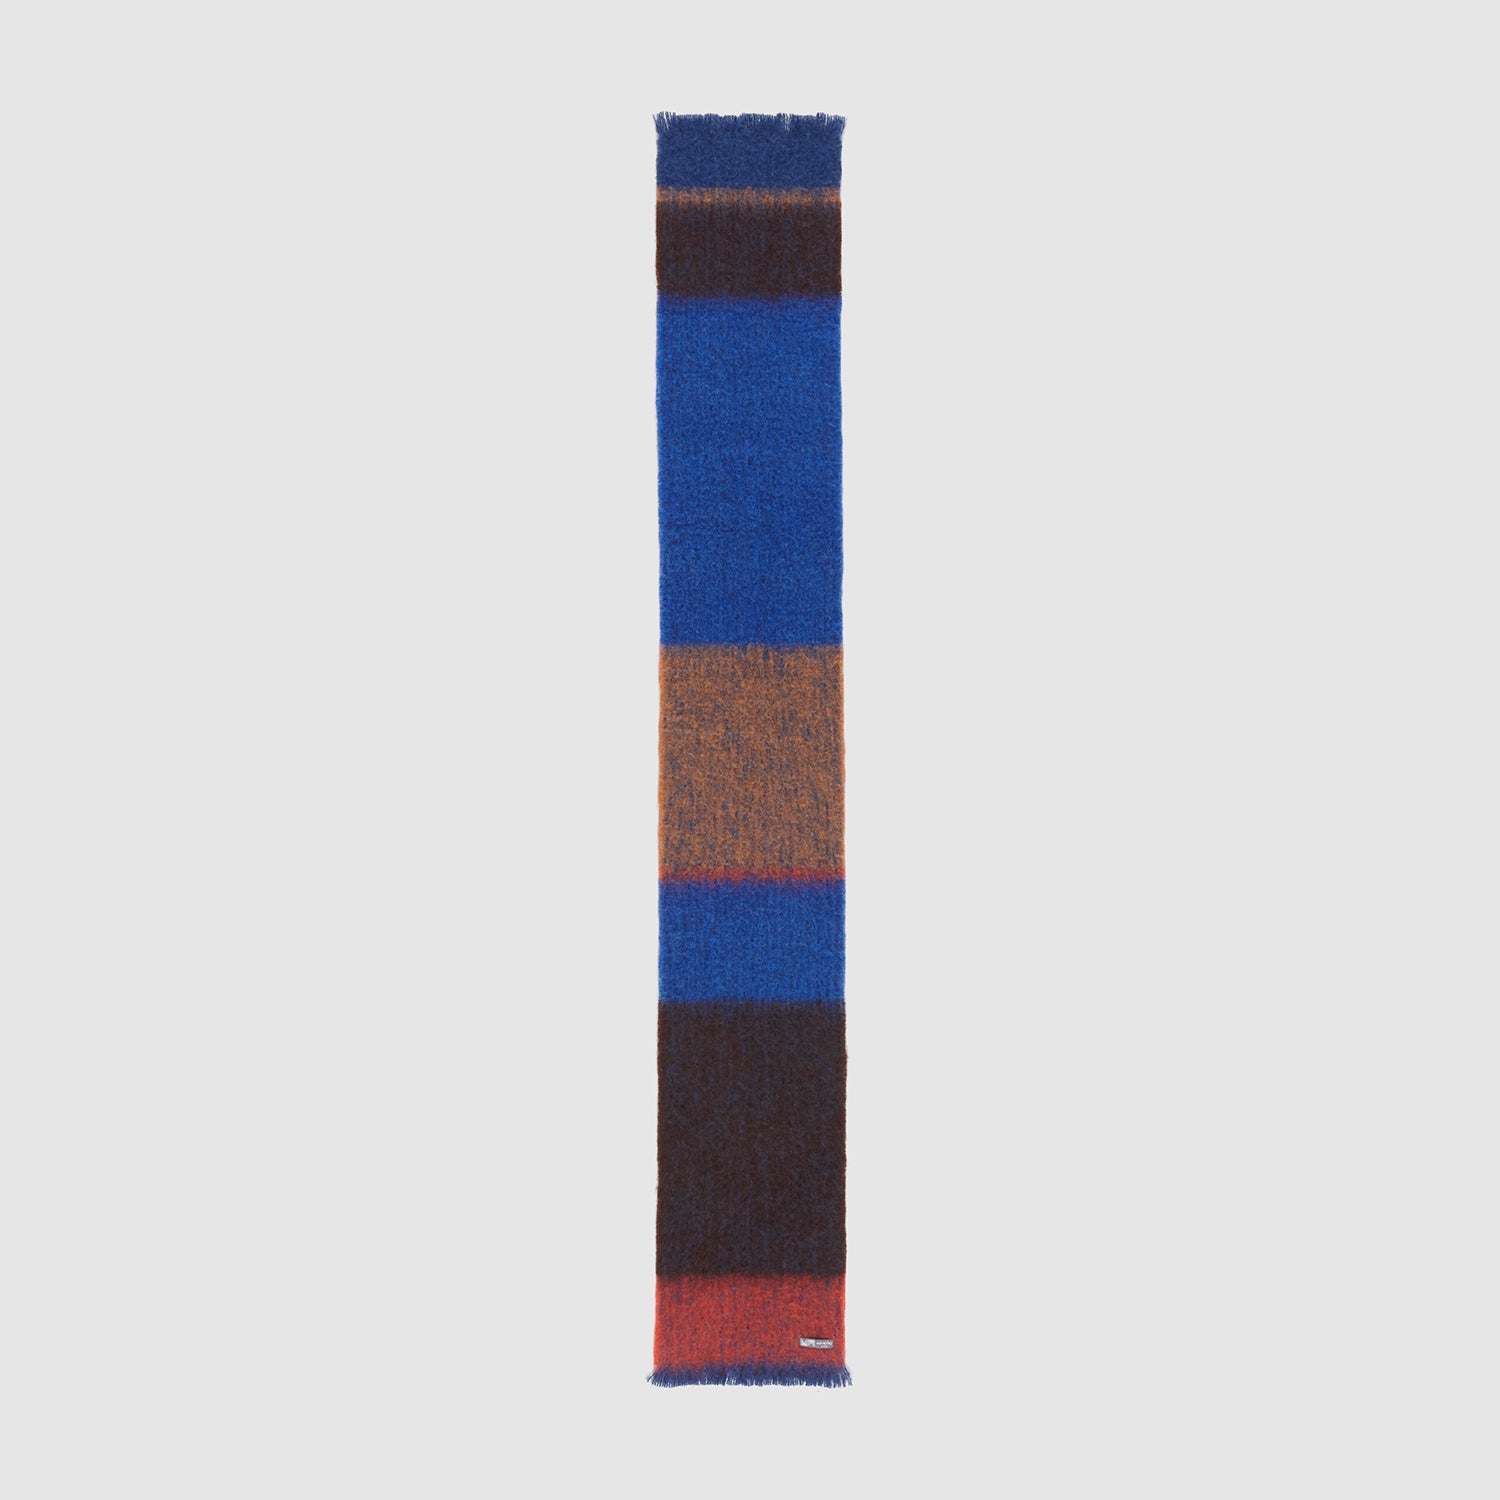 Full view of cobalt Quartz scarf.